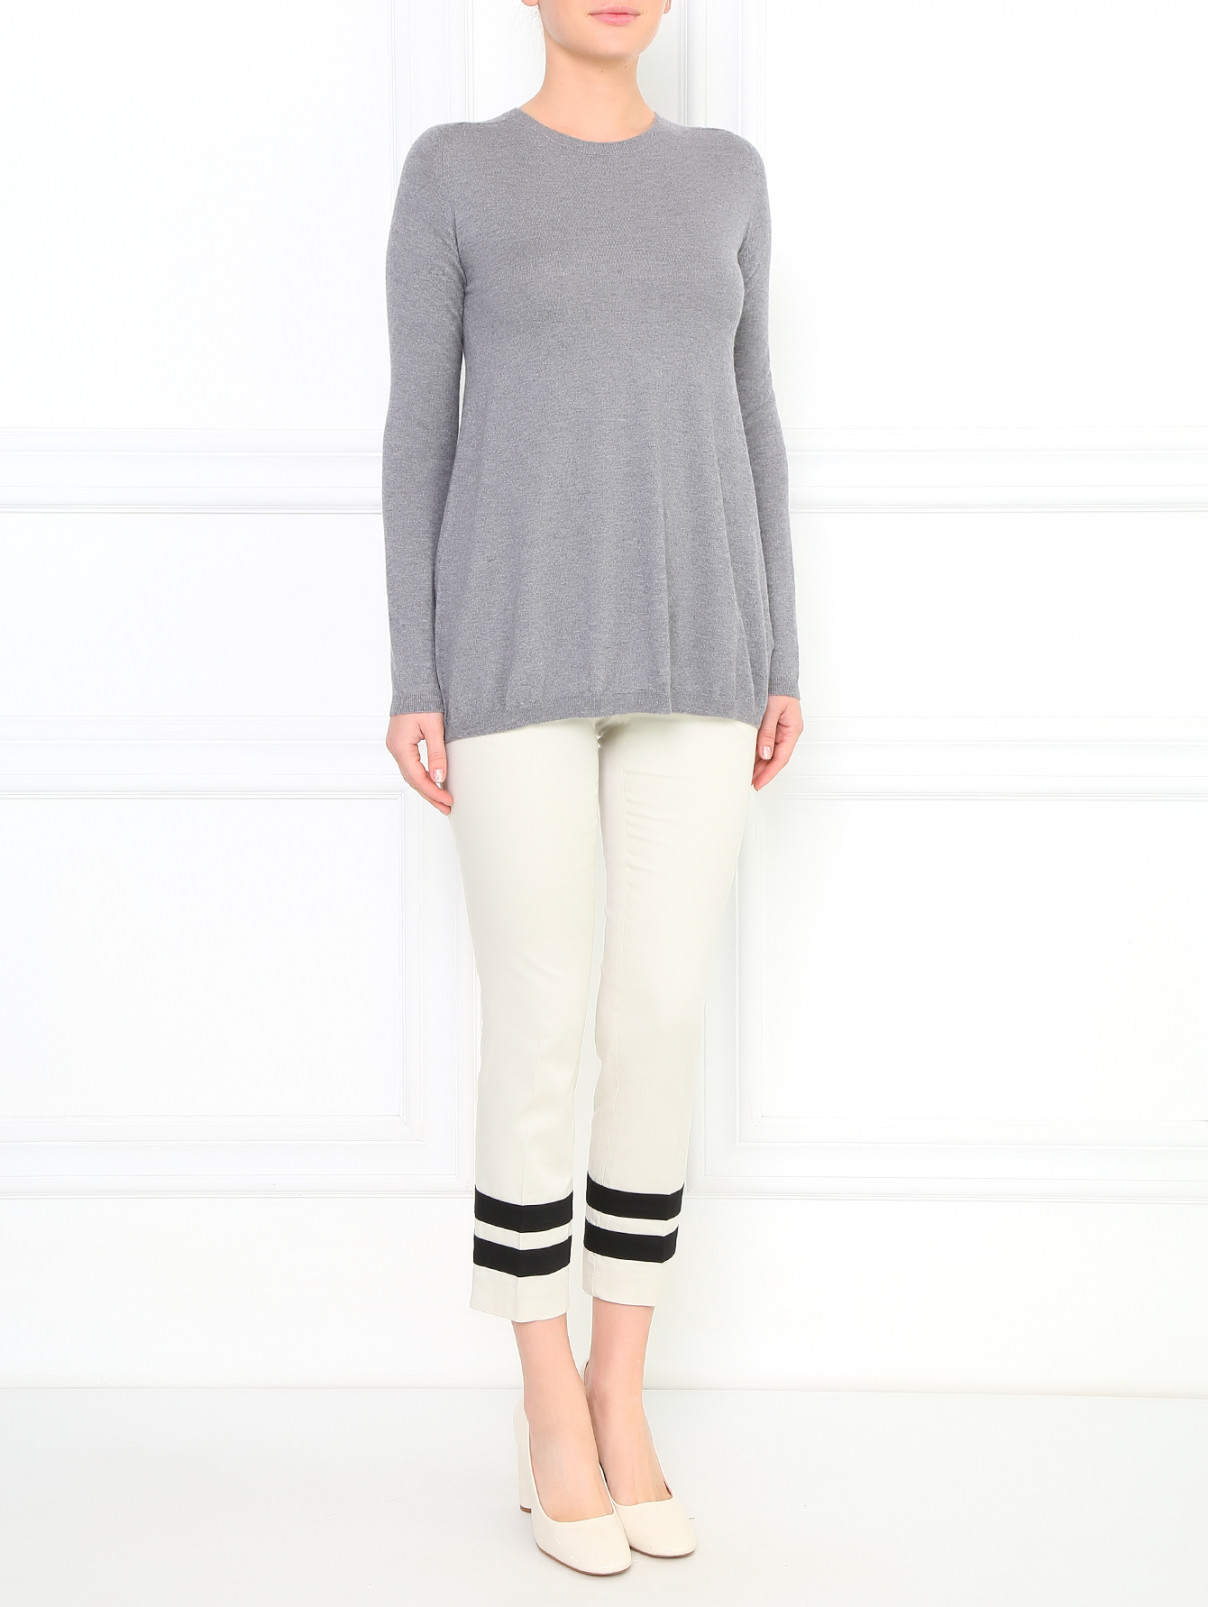 Укороченные брюки из хлопка Moschino Cheap&Chic  –  Модель Общий вид  – Цвет:  Бежевый